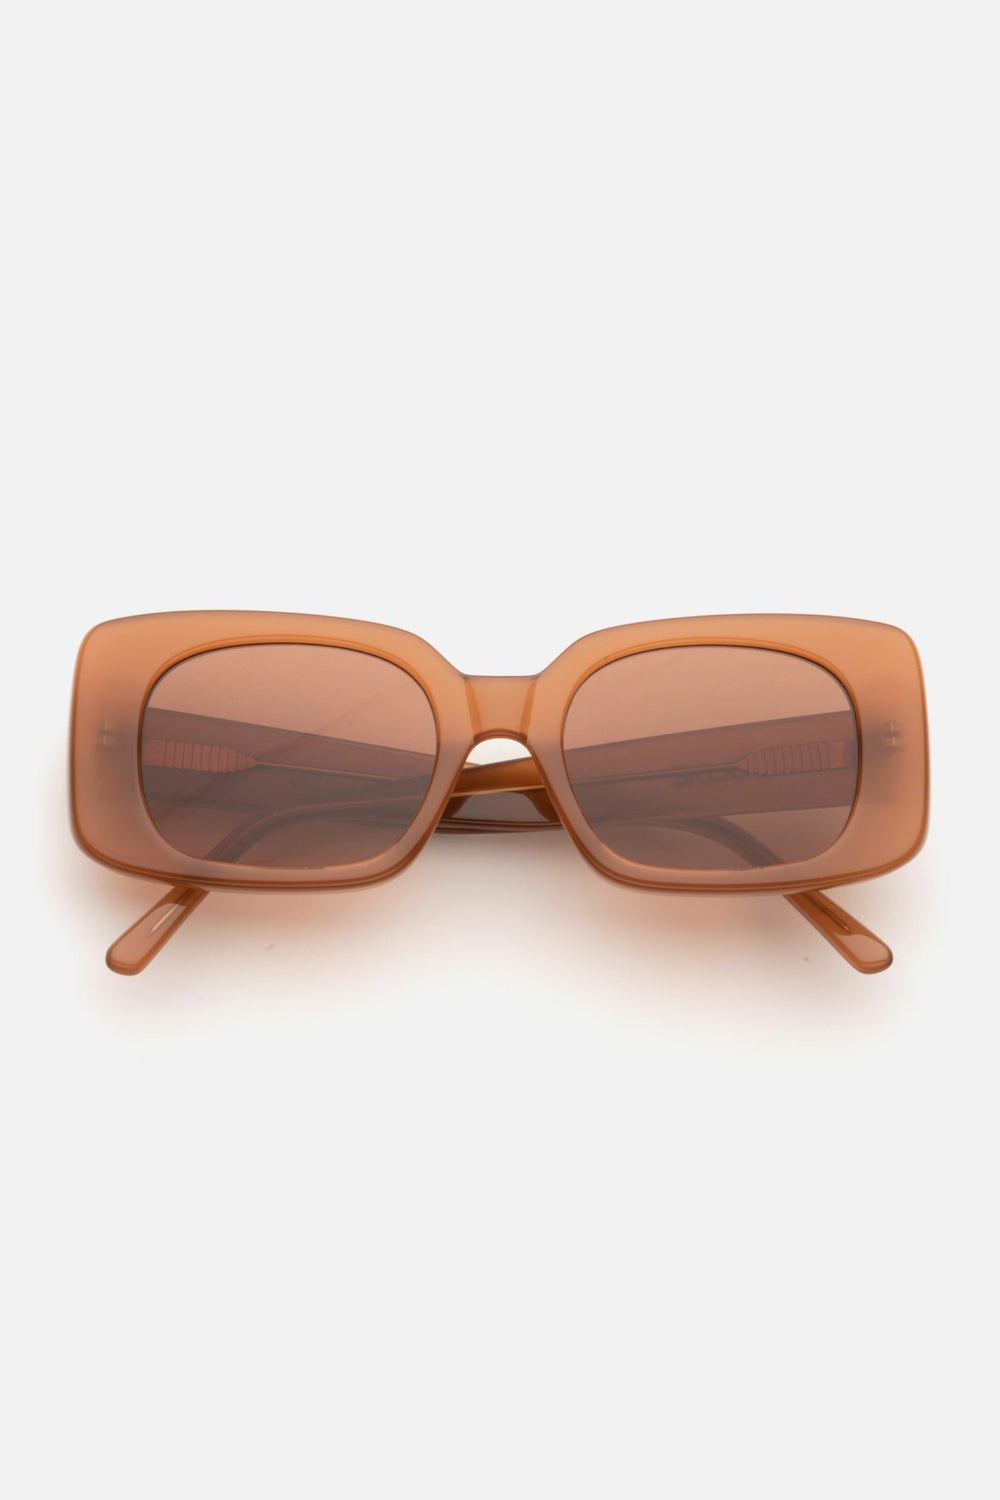 Cocoa Coco Sunglasses